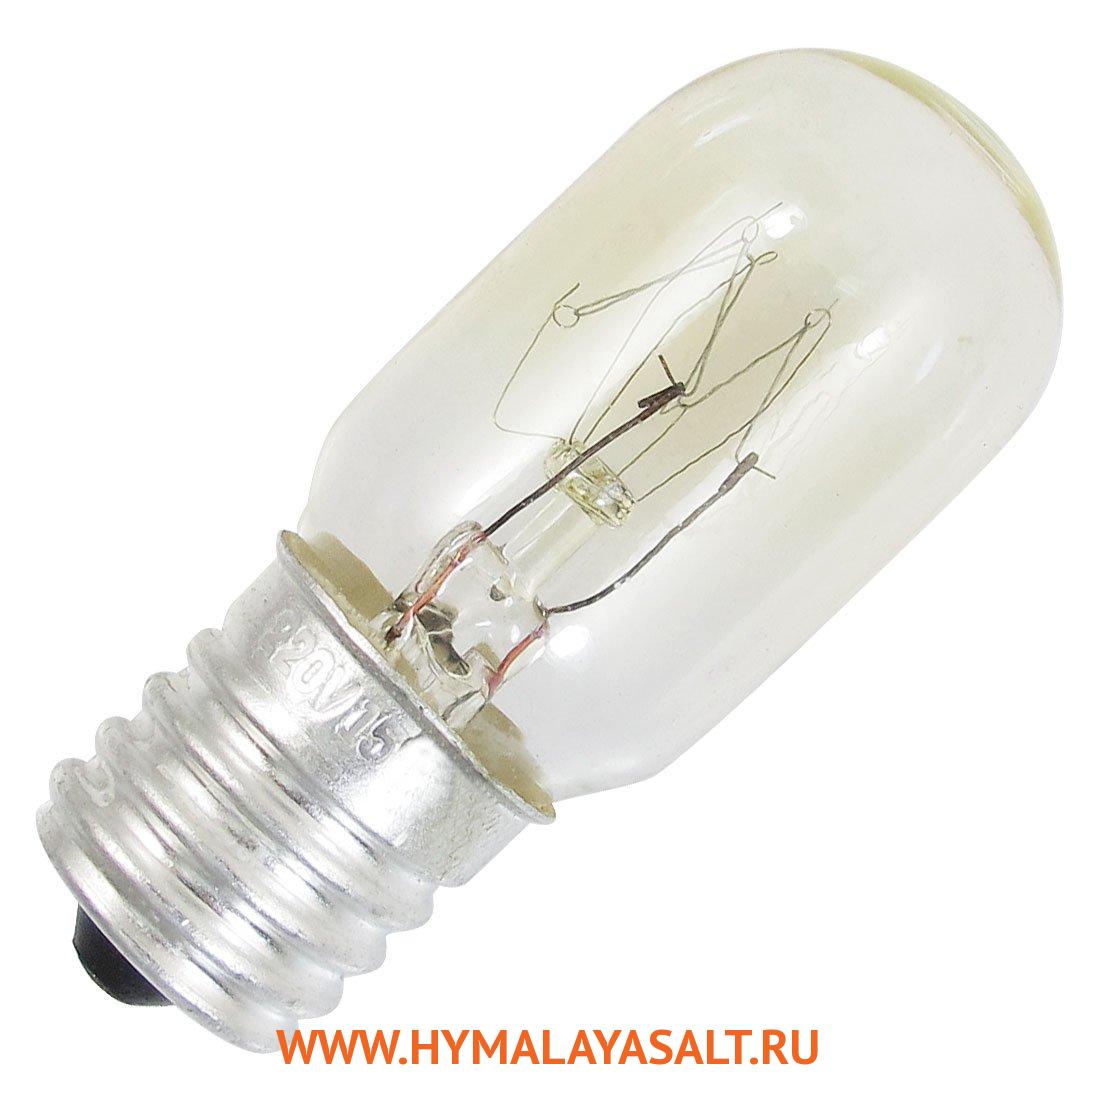 Купить лампочки в новосибирске. Лампа цоколь е10 220v 15w. Цоколь е17 лампочка. Лампа накаливания с цоколем е12. Лампочка для холодильника цоколь е 17.